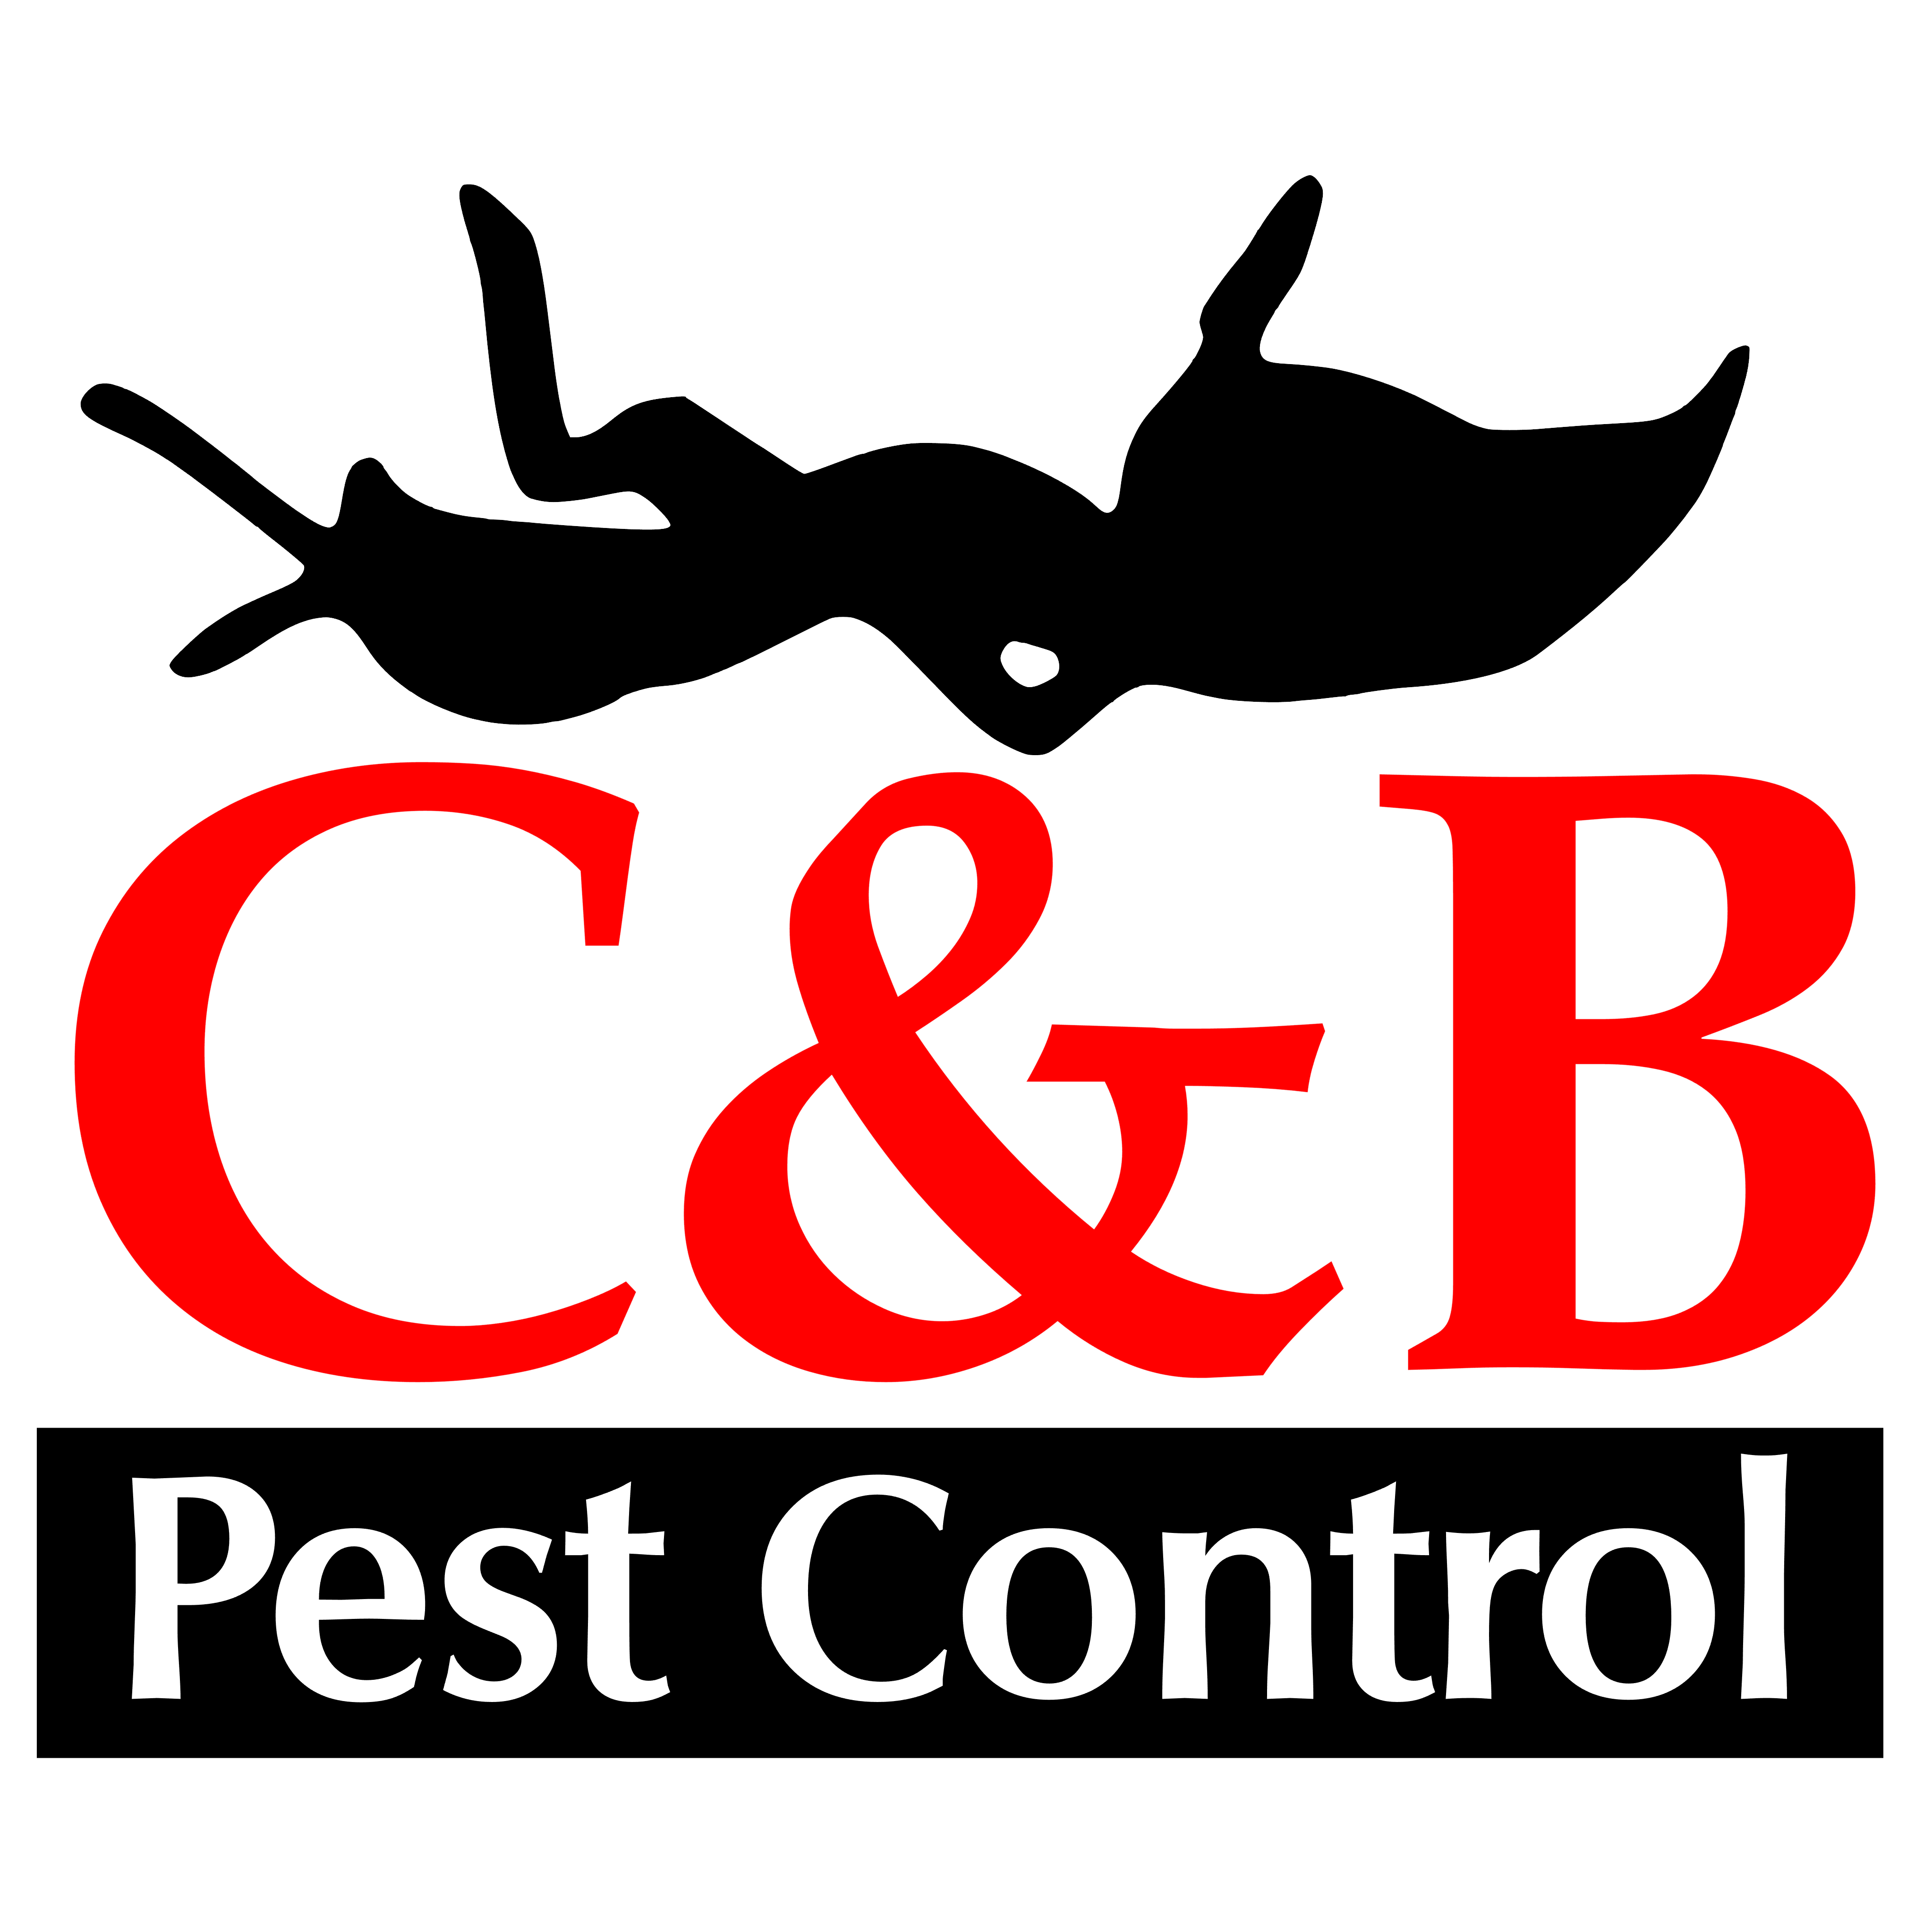 C&B Pest Control